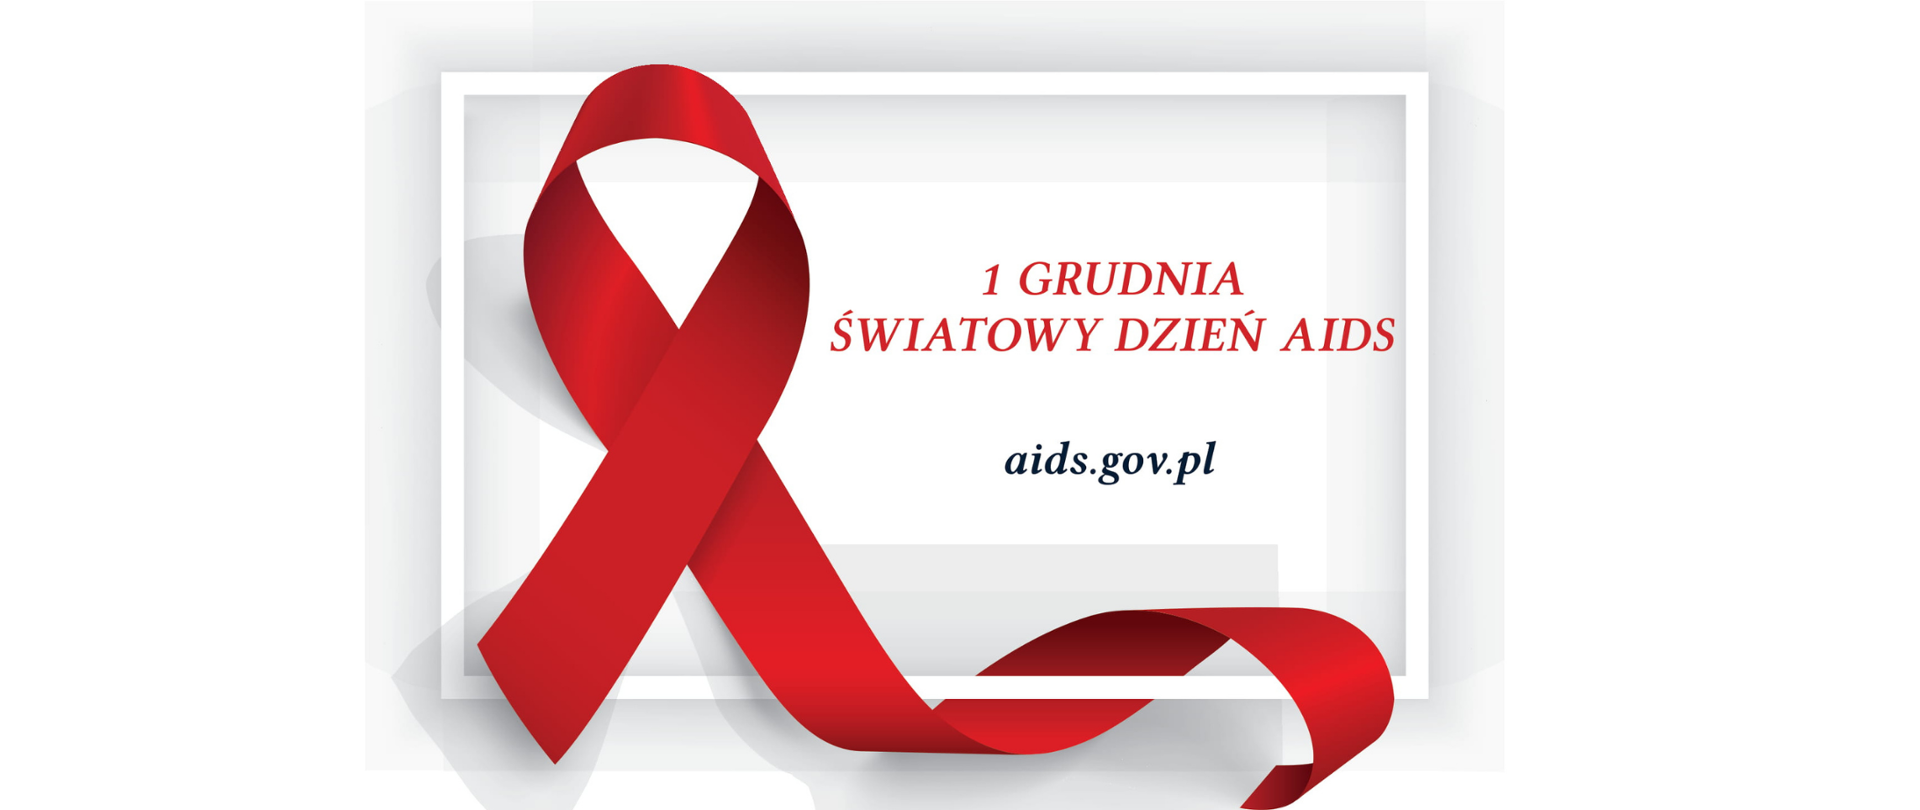 Pierwszy grudnia Światowy Dzień AIDS - baner, zdjęcie przedstawia czerwoną kokardkę z napisem 